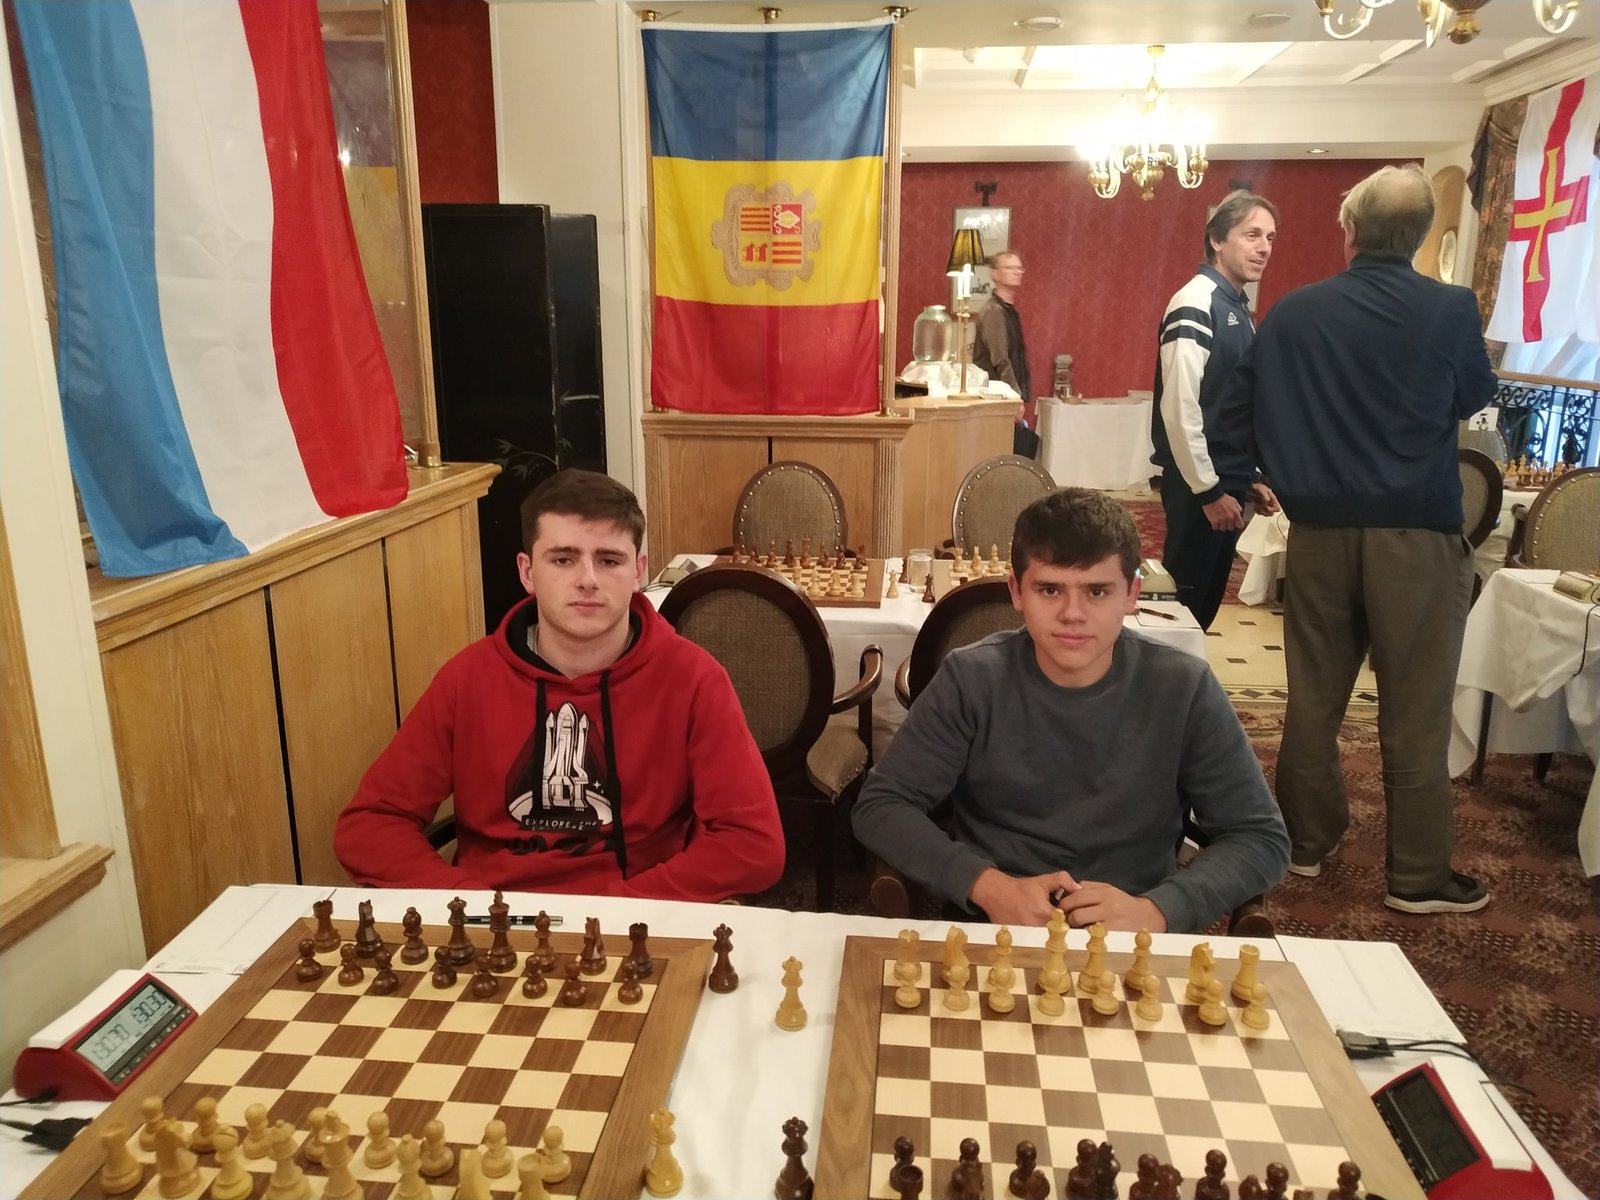 El combinat nacional a l'Europeu dels Petits Estats / Escacs Andorra